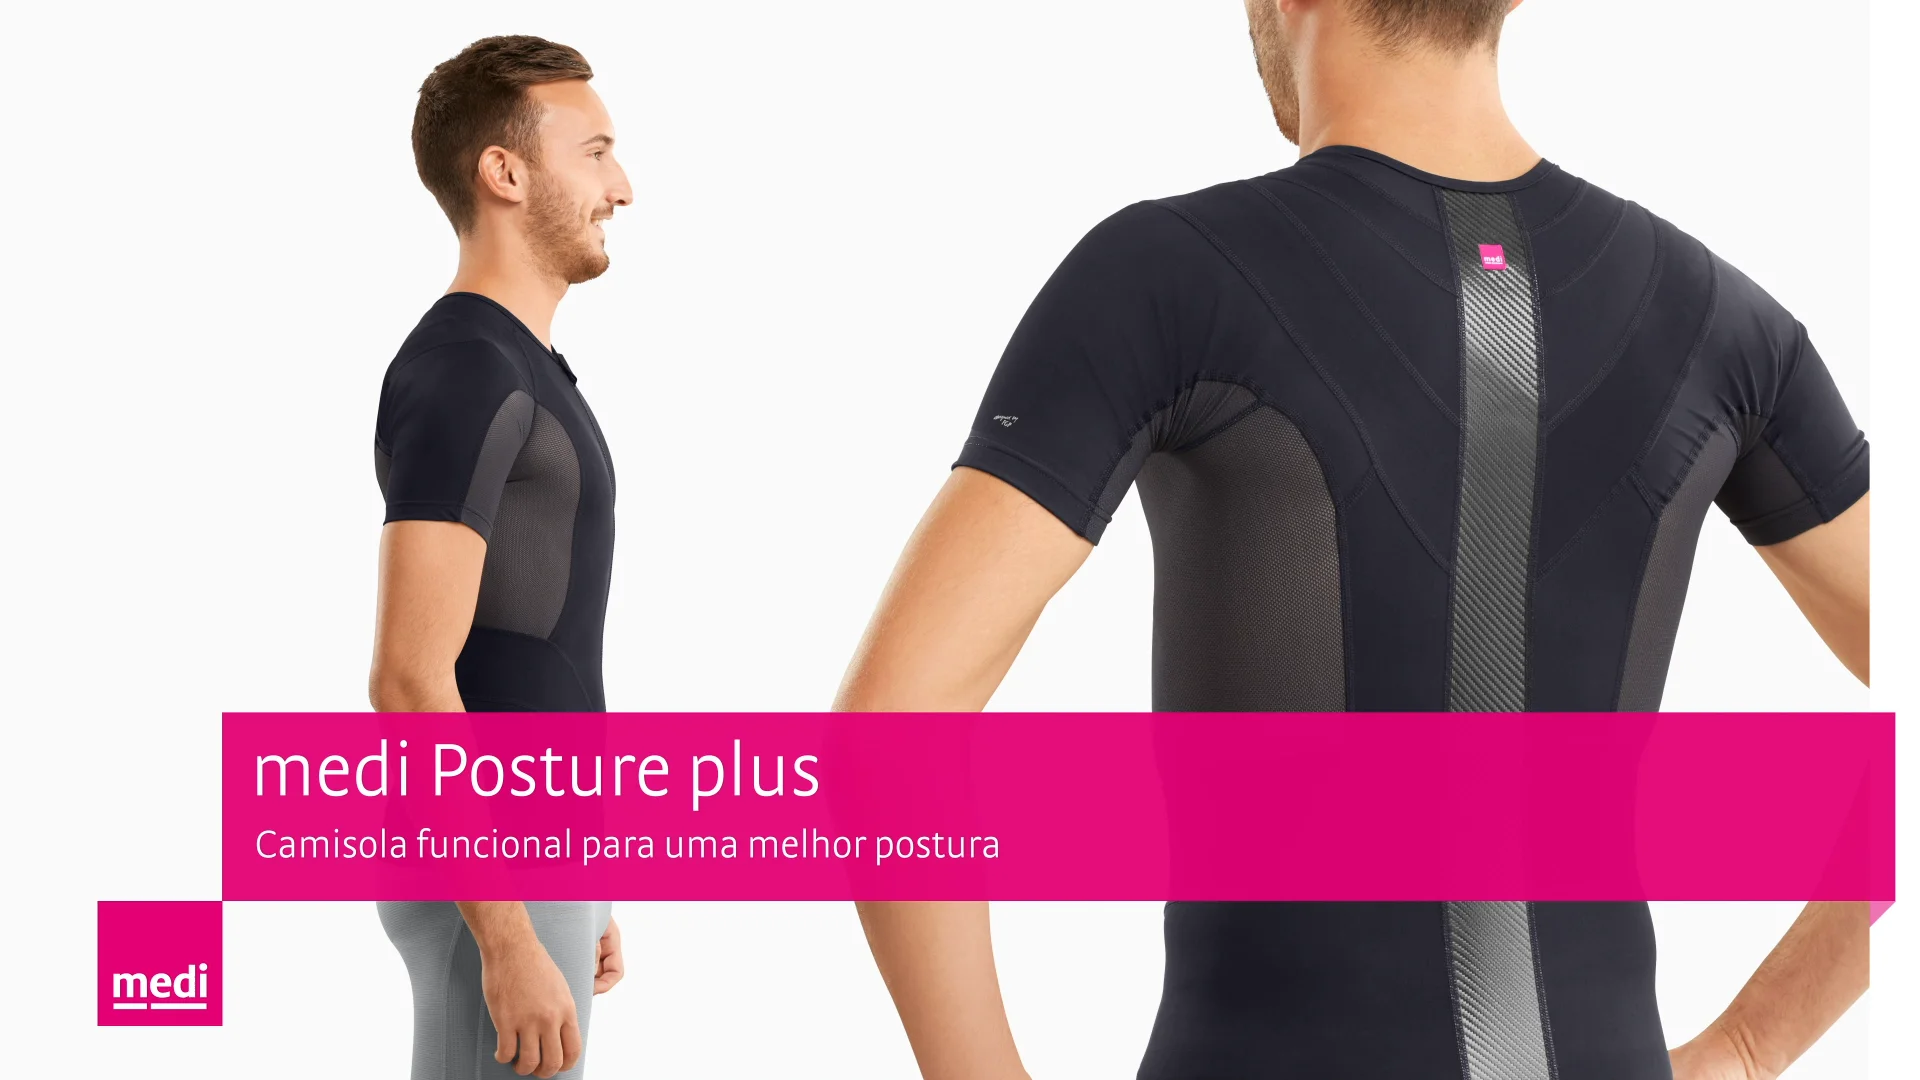 medi Posture plus – Roupa funcional para uma melhor qualidade de vida on  Vimeo